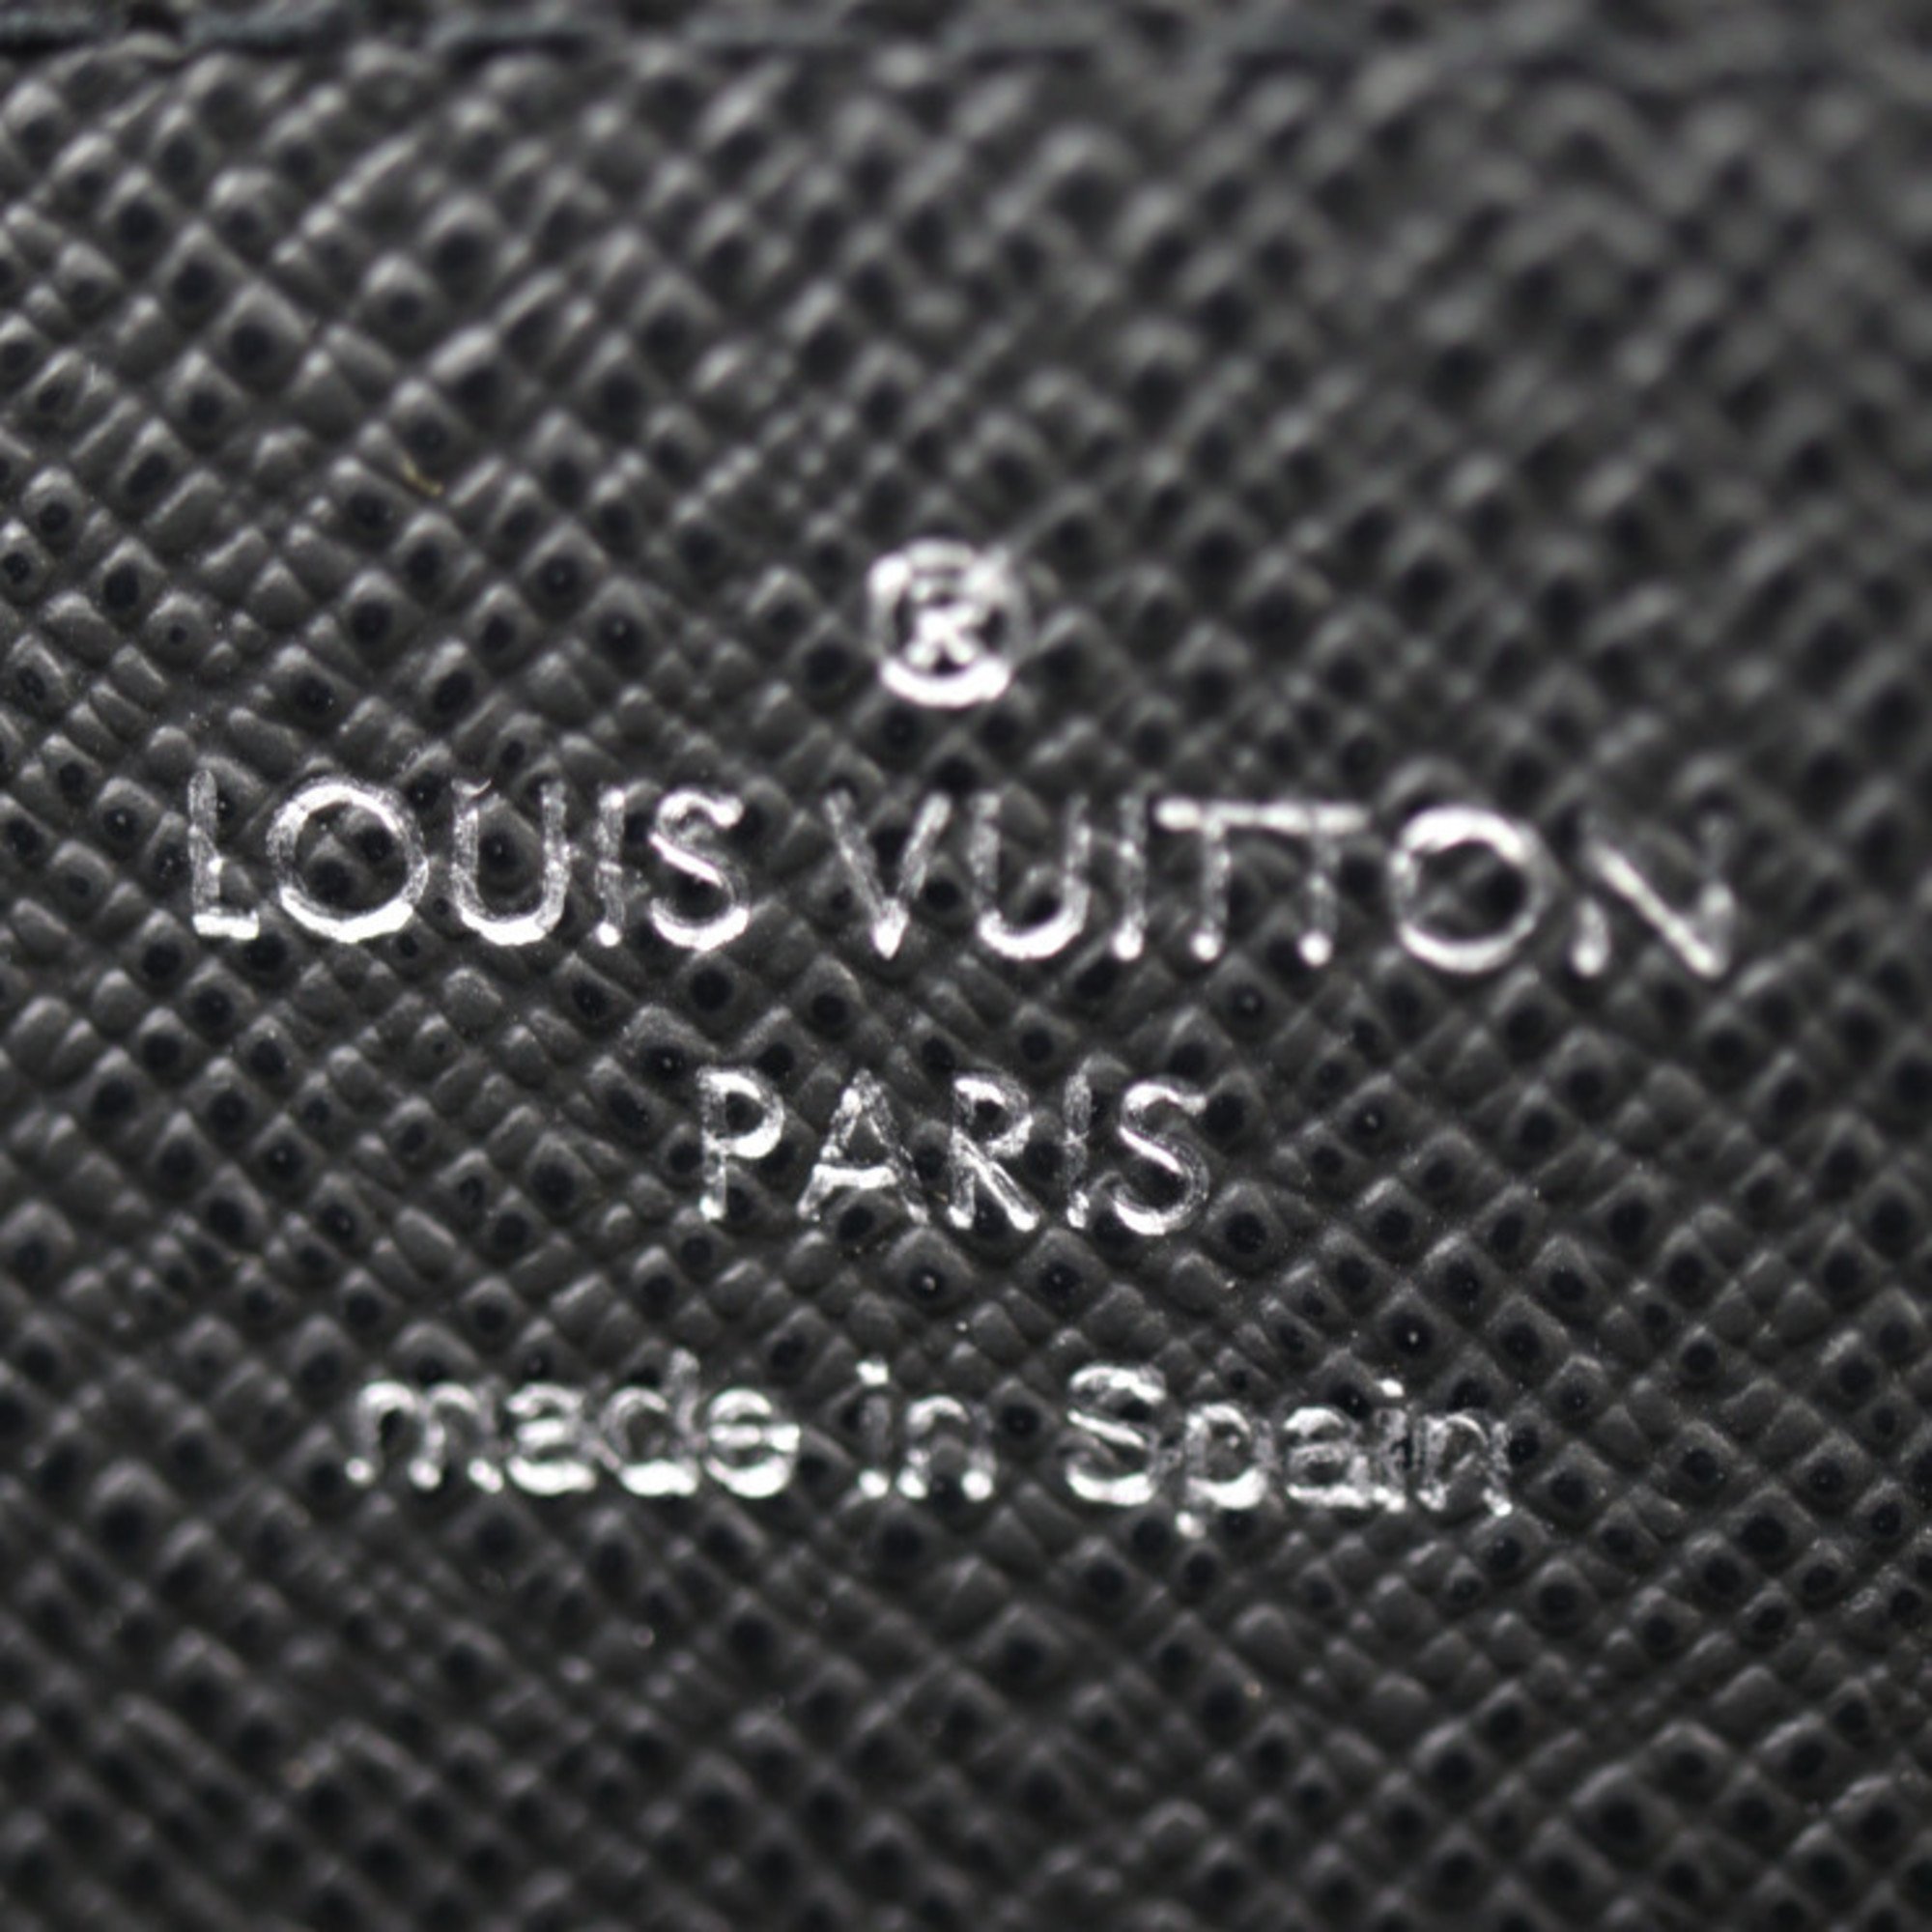 LOUIS VUITTON Zippy XL Long Wallet M44275 Taiga Black Handbag Case Round Vuitton